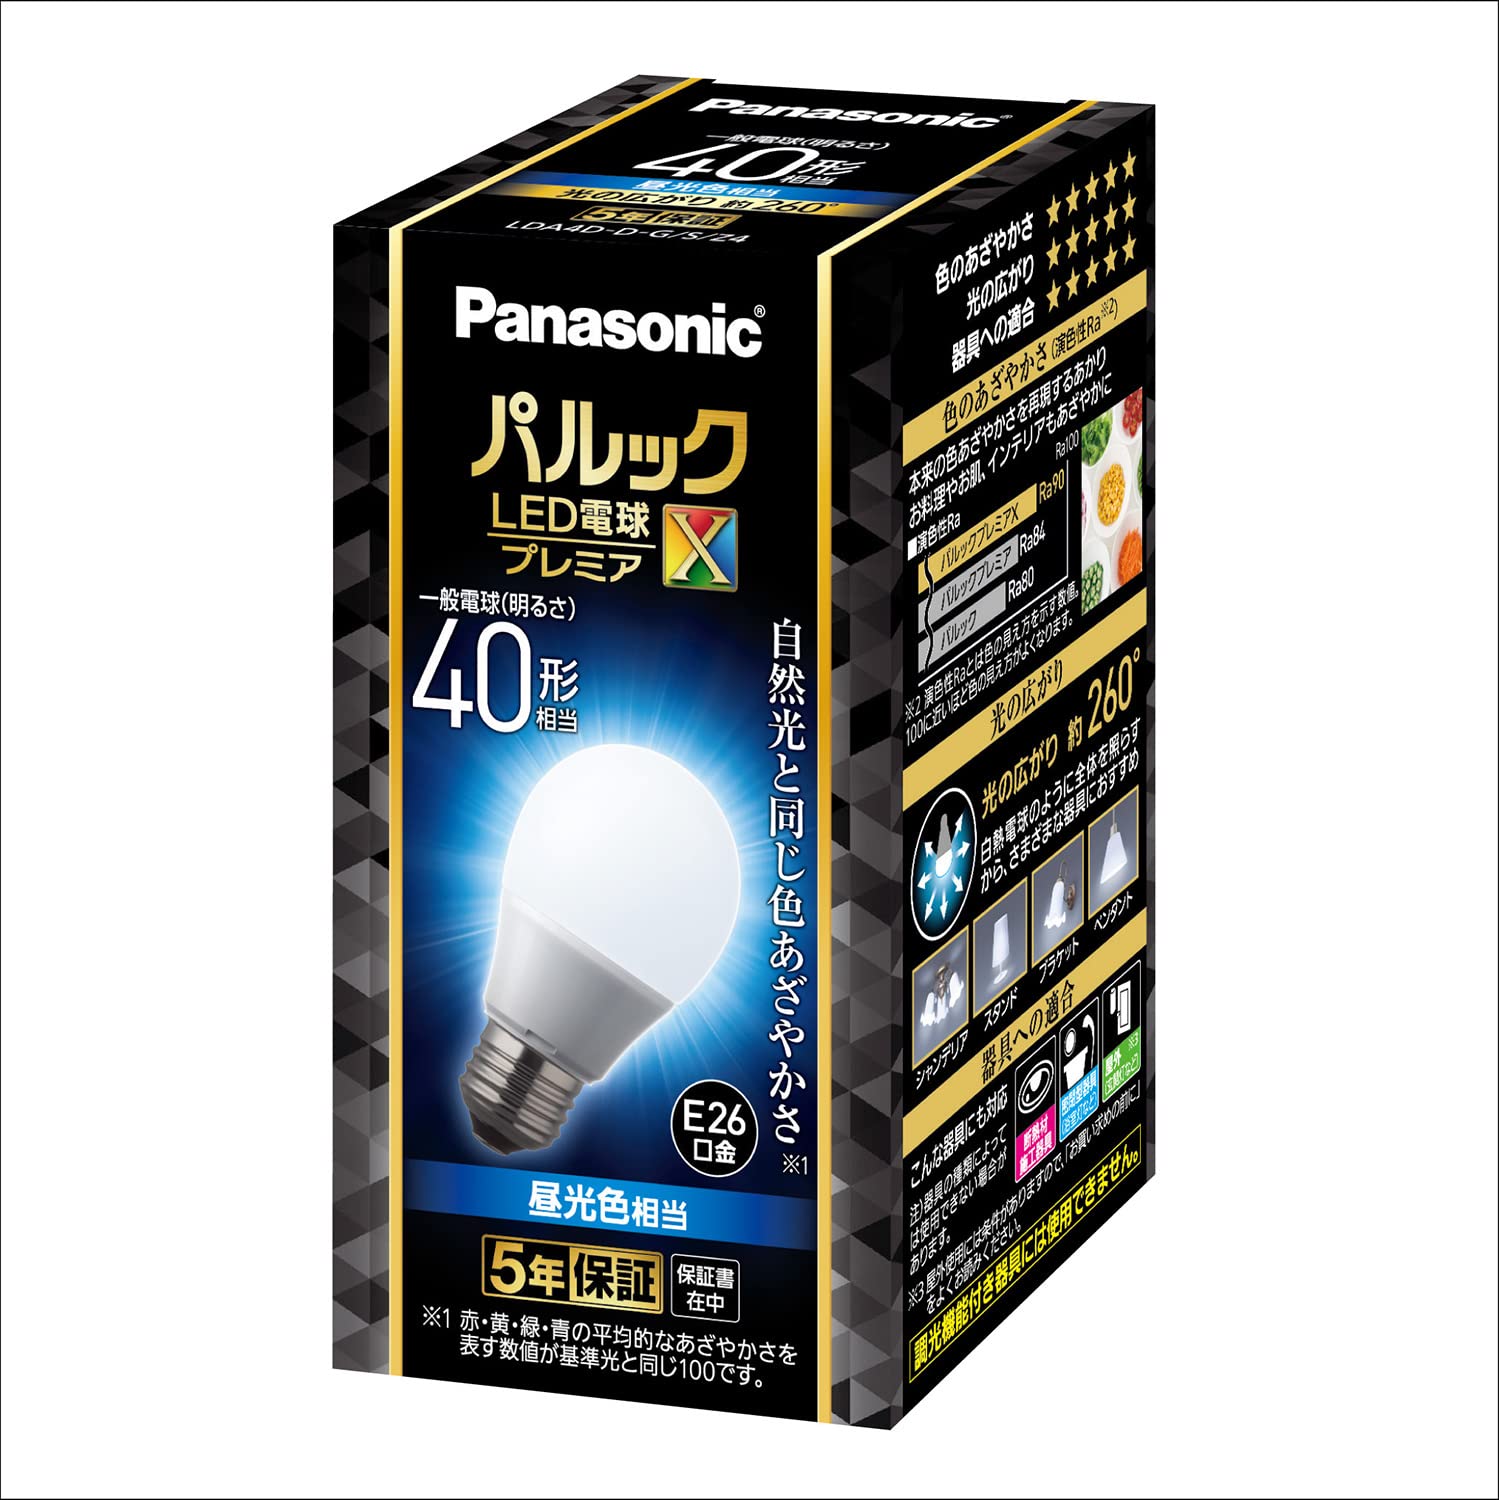 パナソニック パルック LED電球 口金直径26mm プレミアX 電球40形相当 昼光色相当(4.4W) 一般電球 空間全体を照らすタイプ (全方向タイプ